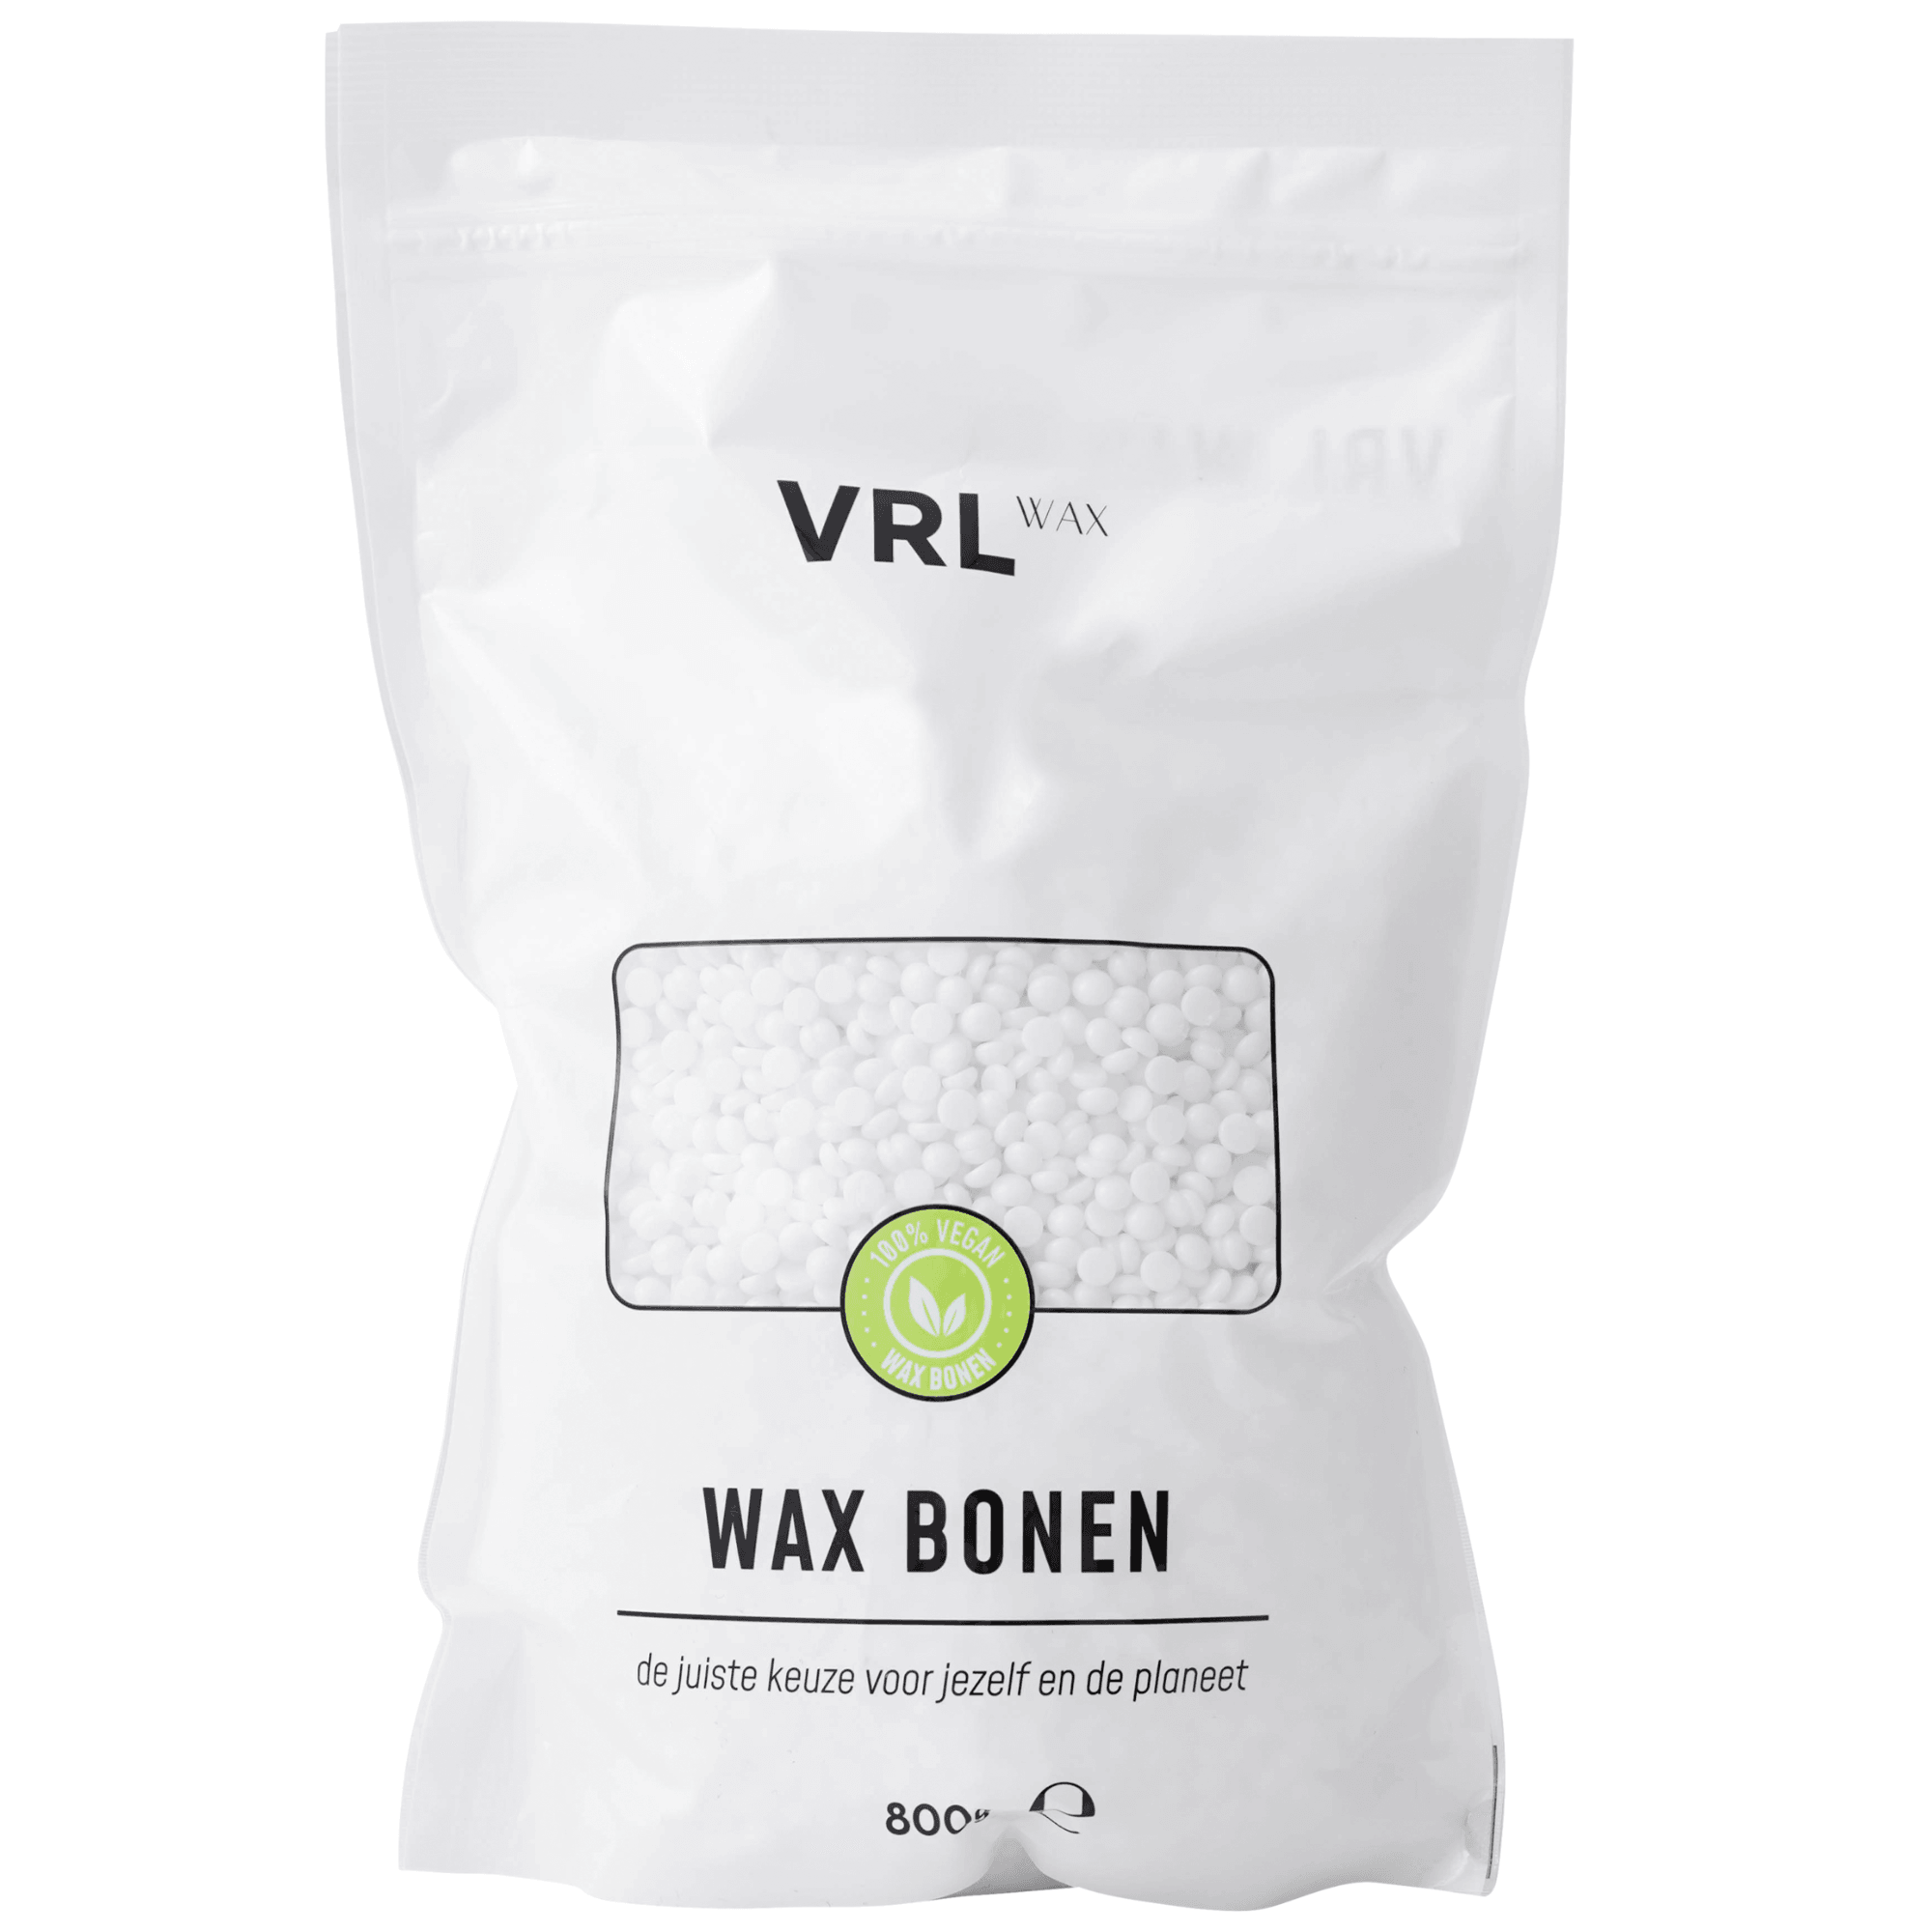 VRL Wax Bonen - Kokosnoot (800 gram) - VRL WAX